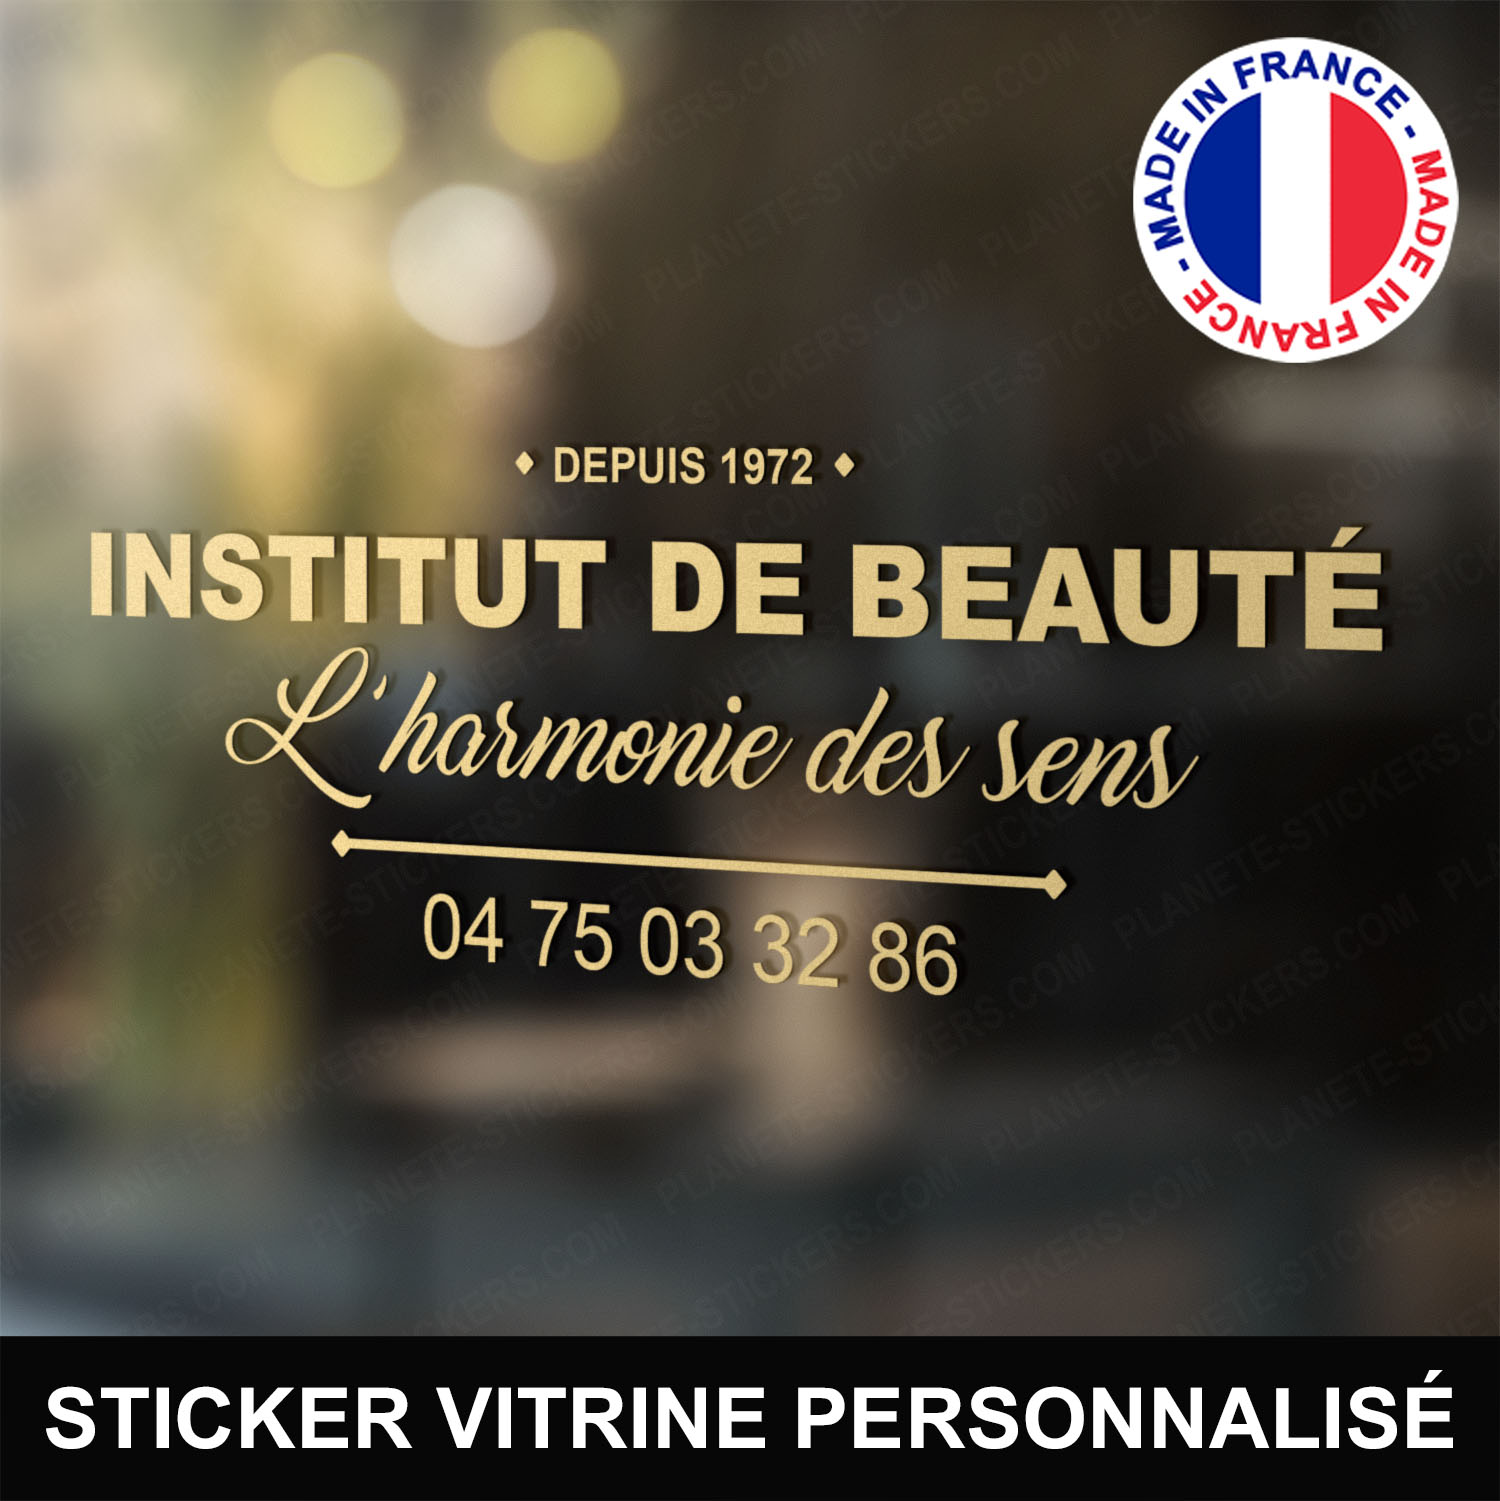 ref1institutdebeautevitrine-stickers-vitrine-institut-de-beauté-sticker-personnalisé-beaute-autocollant-salon-esthétique-esthéticienne-vitre-vitrophanie-logo-écriture